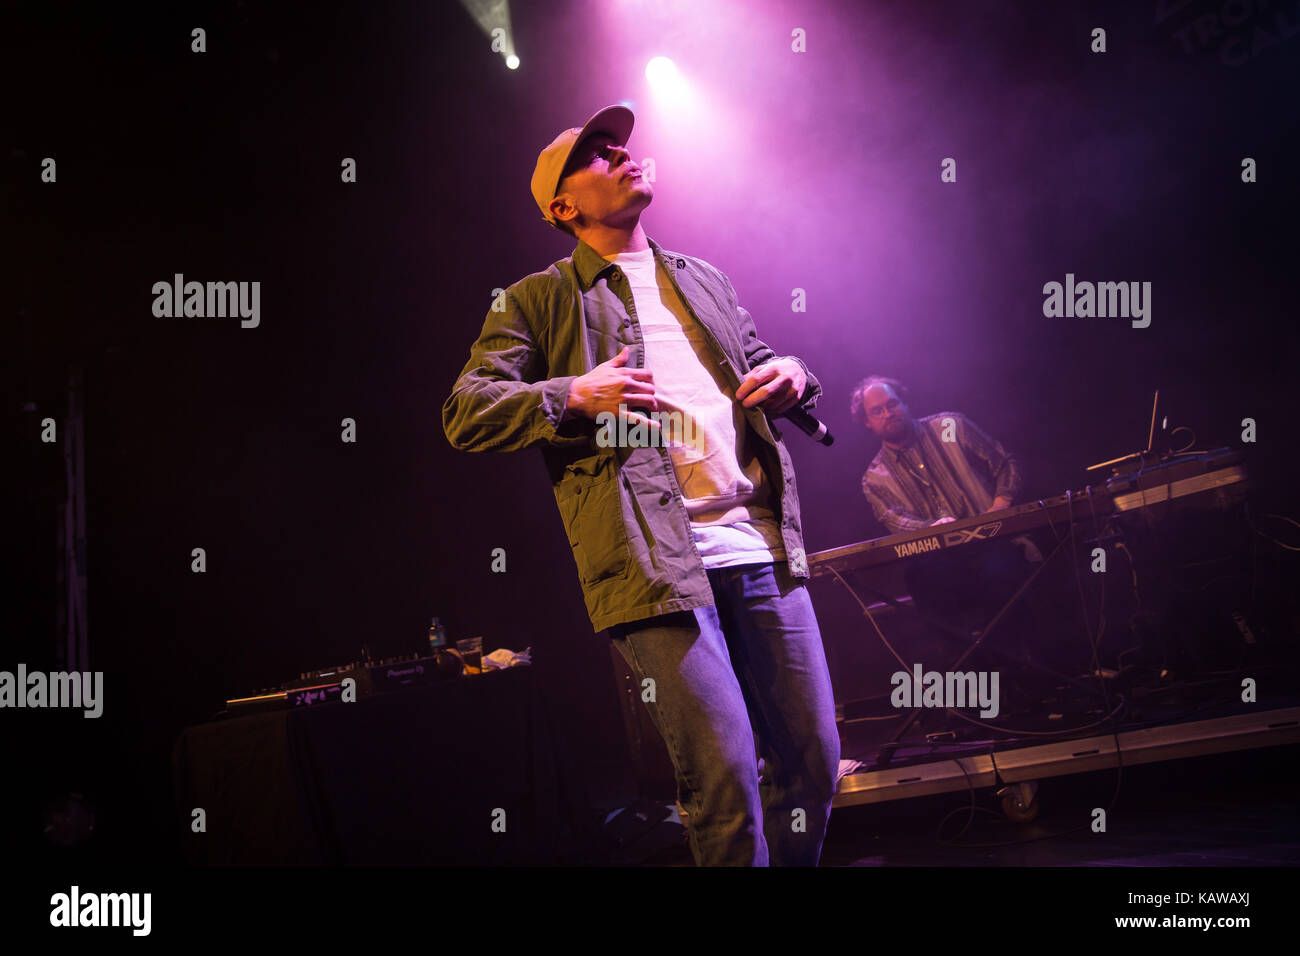 Die norwegische Texter und Rapper Ivan Ave führt einen jazzigen hip hop Konzert in der norwegischen Musik Festival Trondheim Aufruf 2017. Norwegen, 03.02.2017. Stockfoto